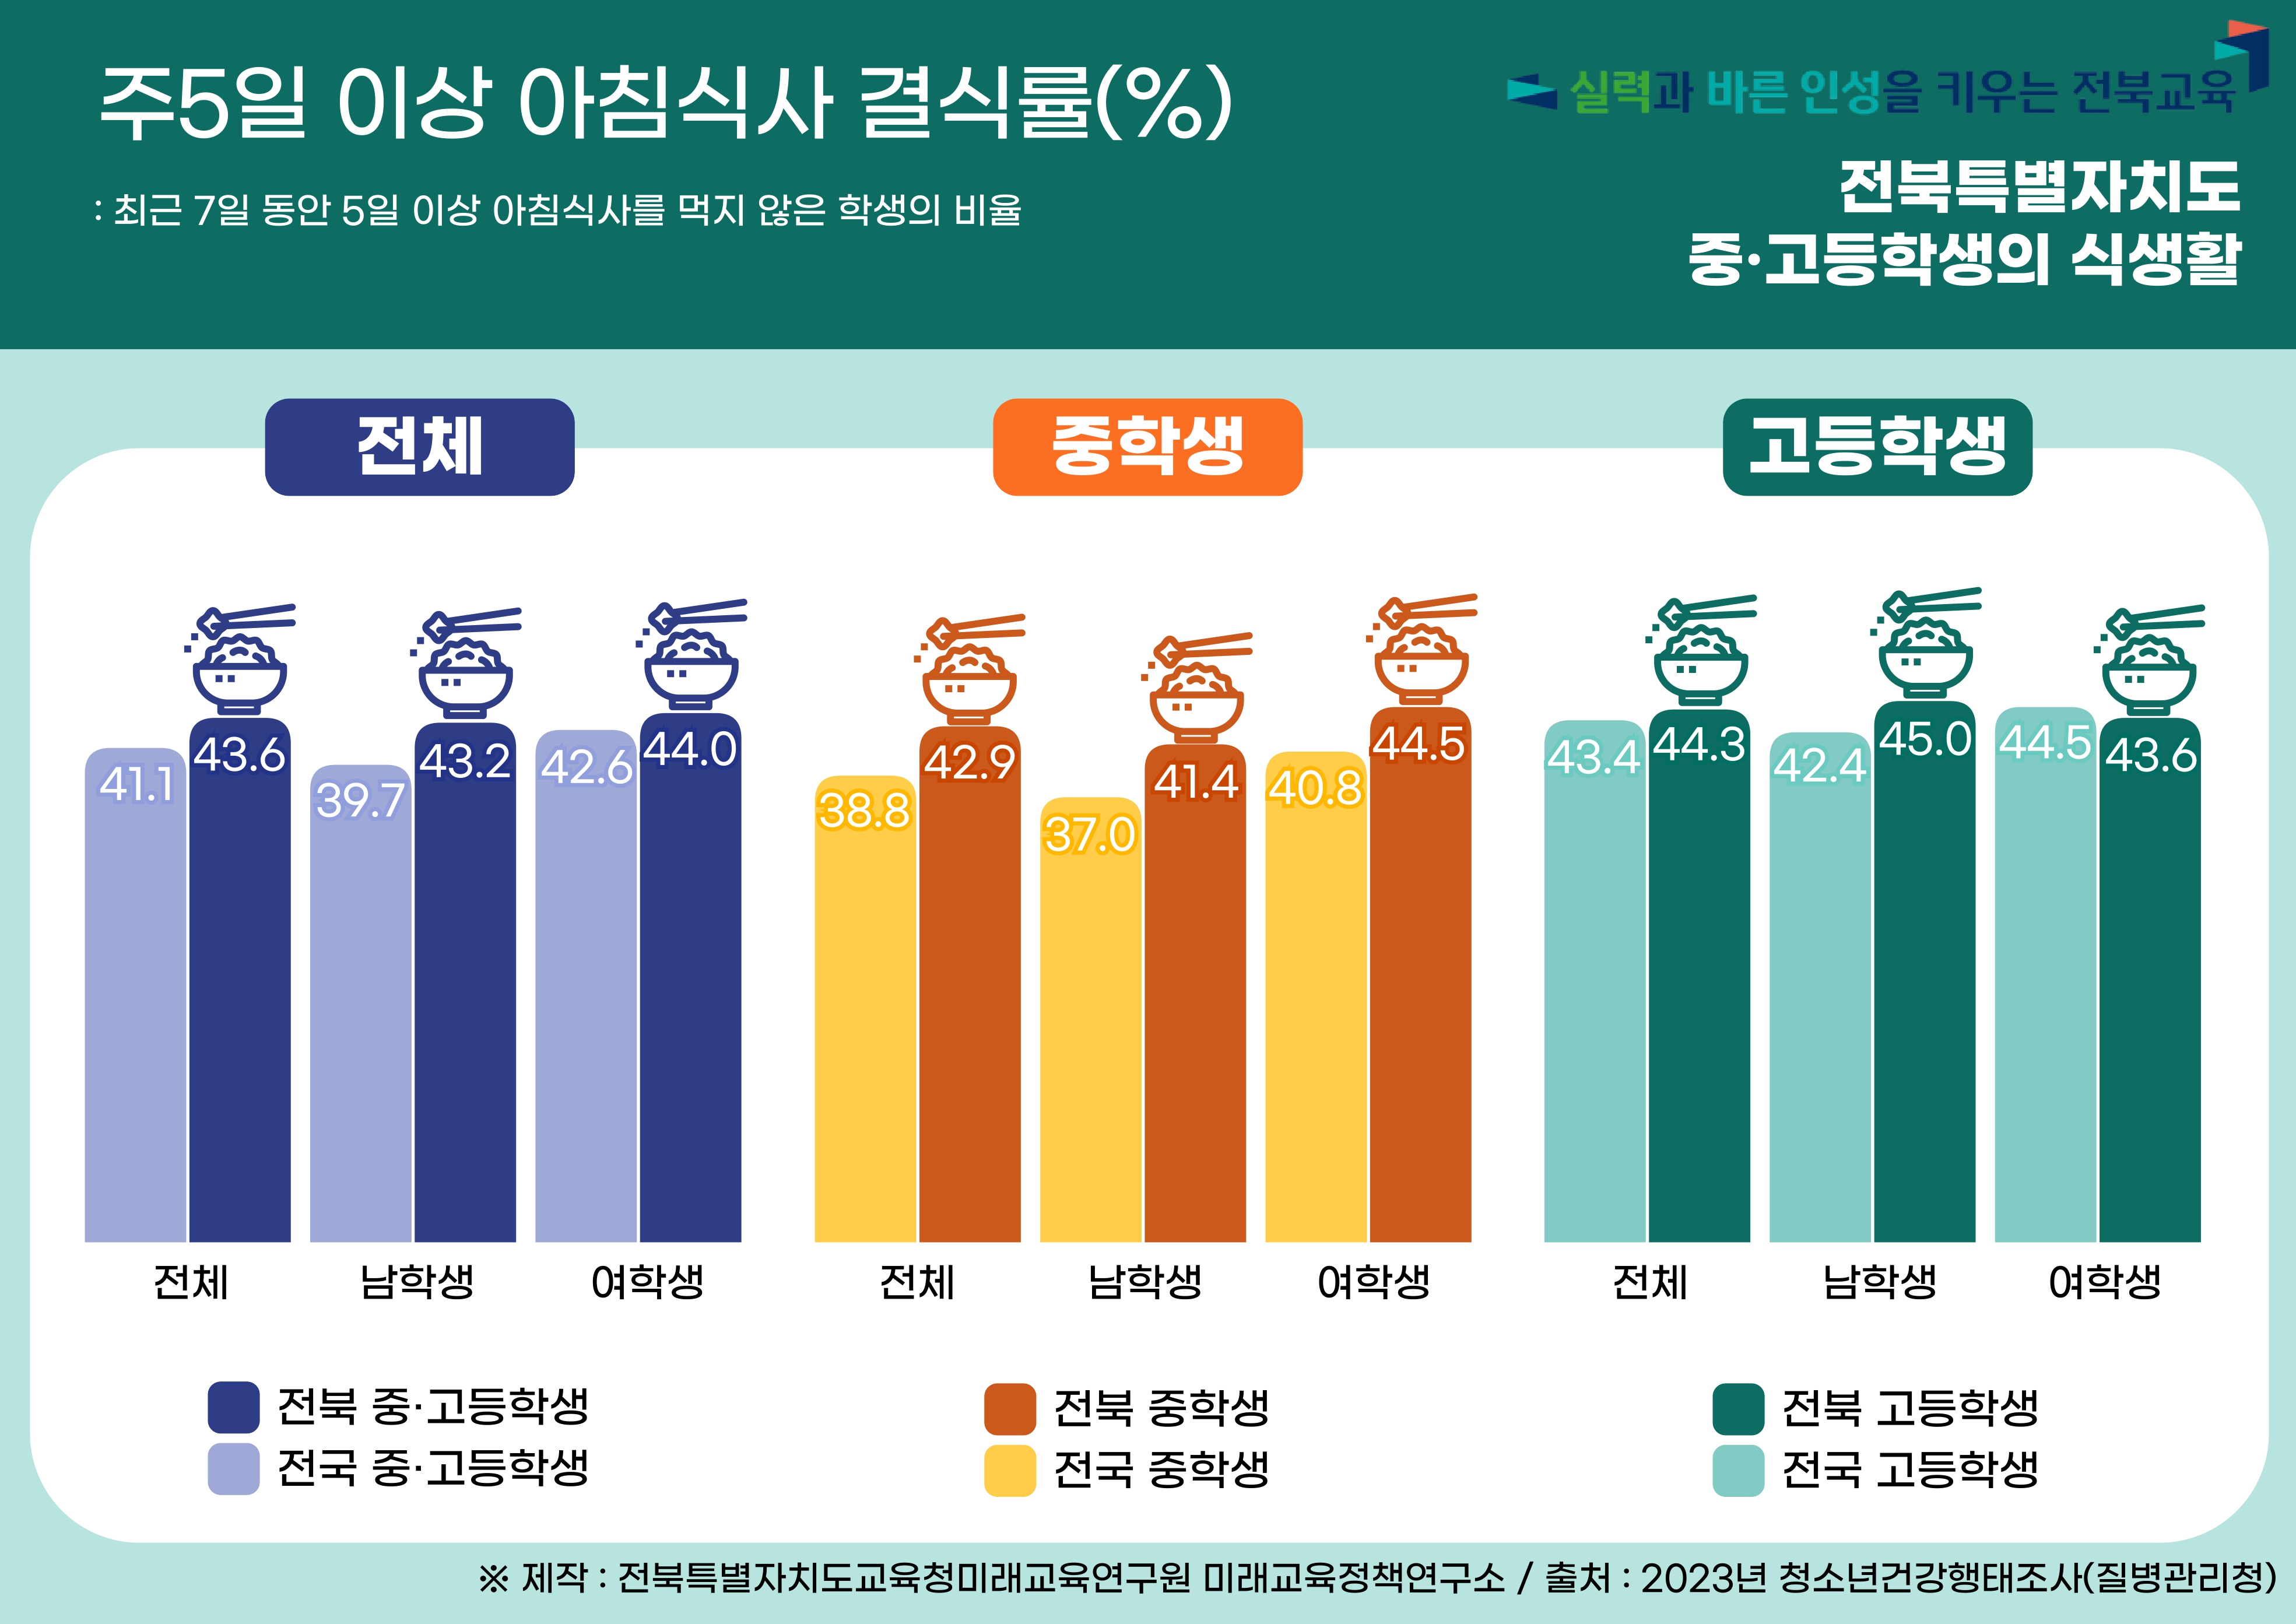 2023년 전북특별자치도 청소년 건강행태 :  식생활